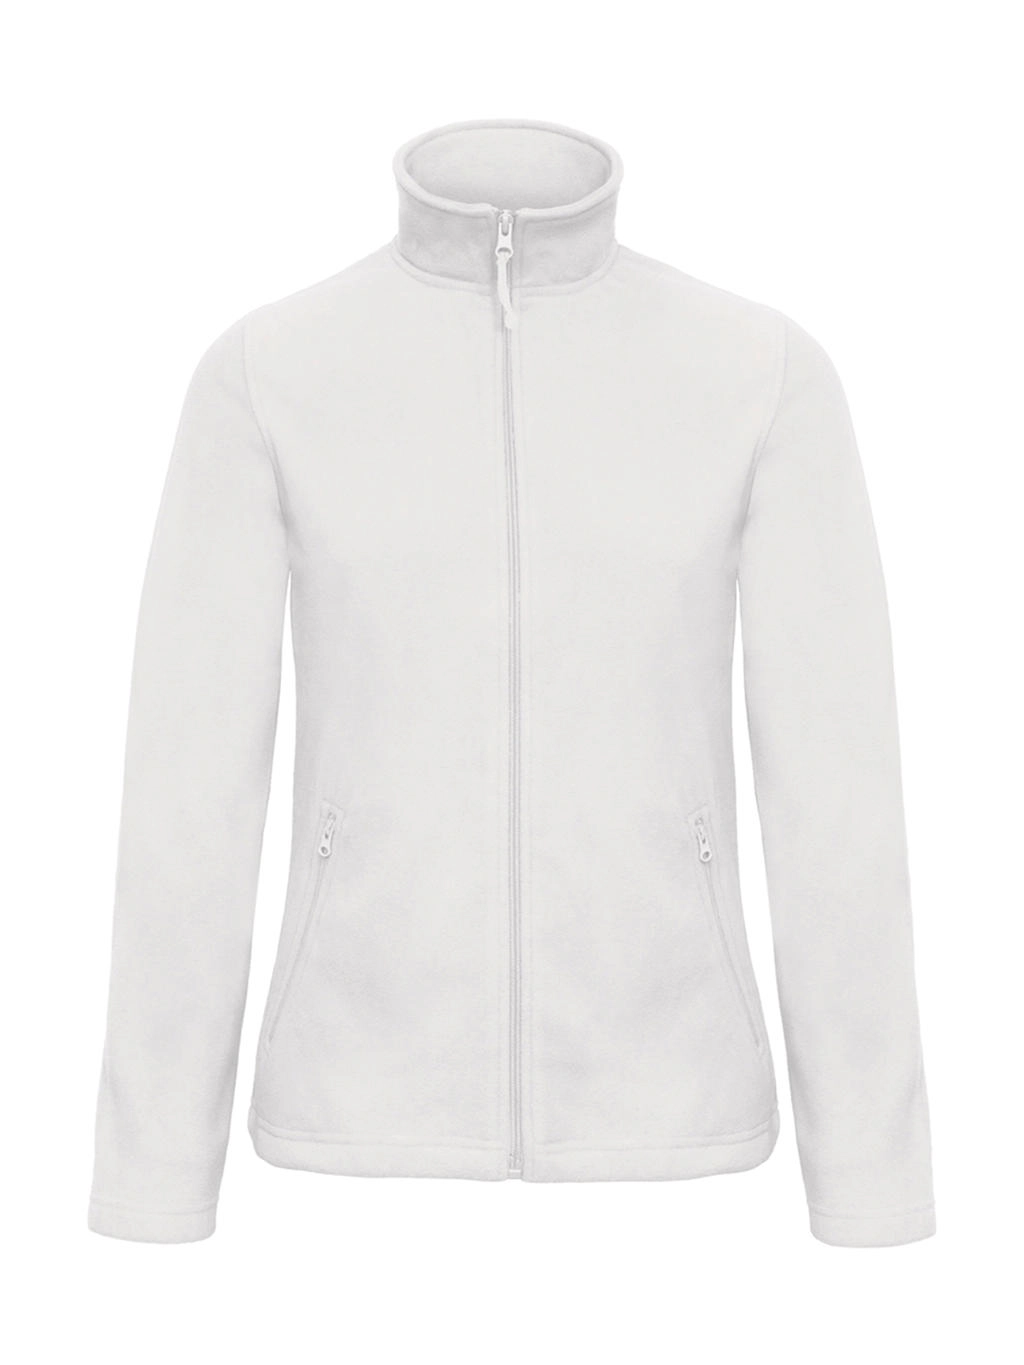 ID.501/women Micro Fleece Full Zip zum Besticken und Bedrucken in der Farbe White mit Ihren Logo, Schriftzug oder Motiv.